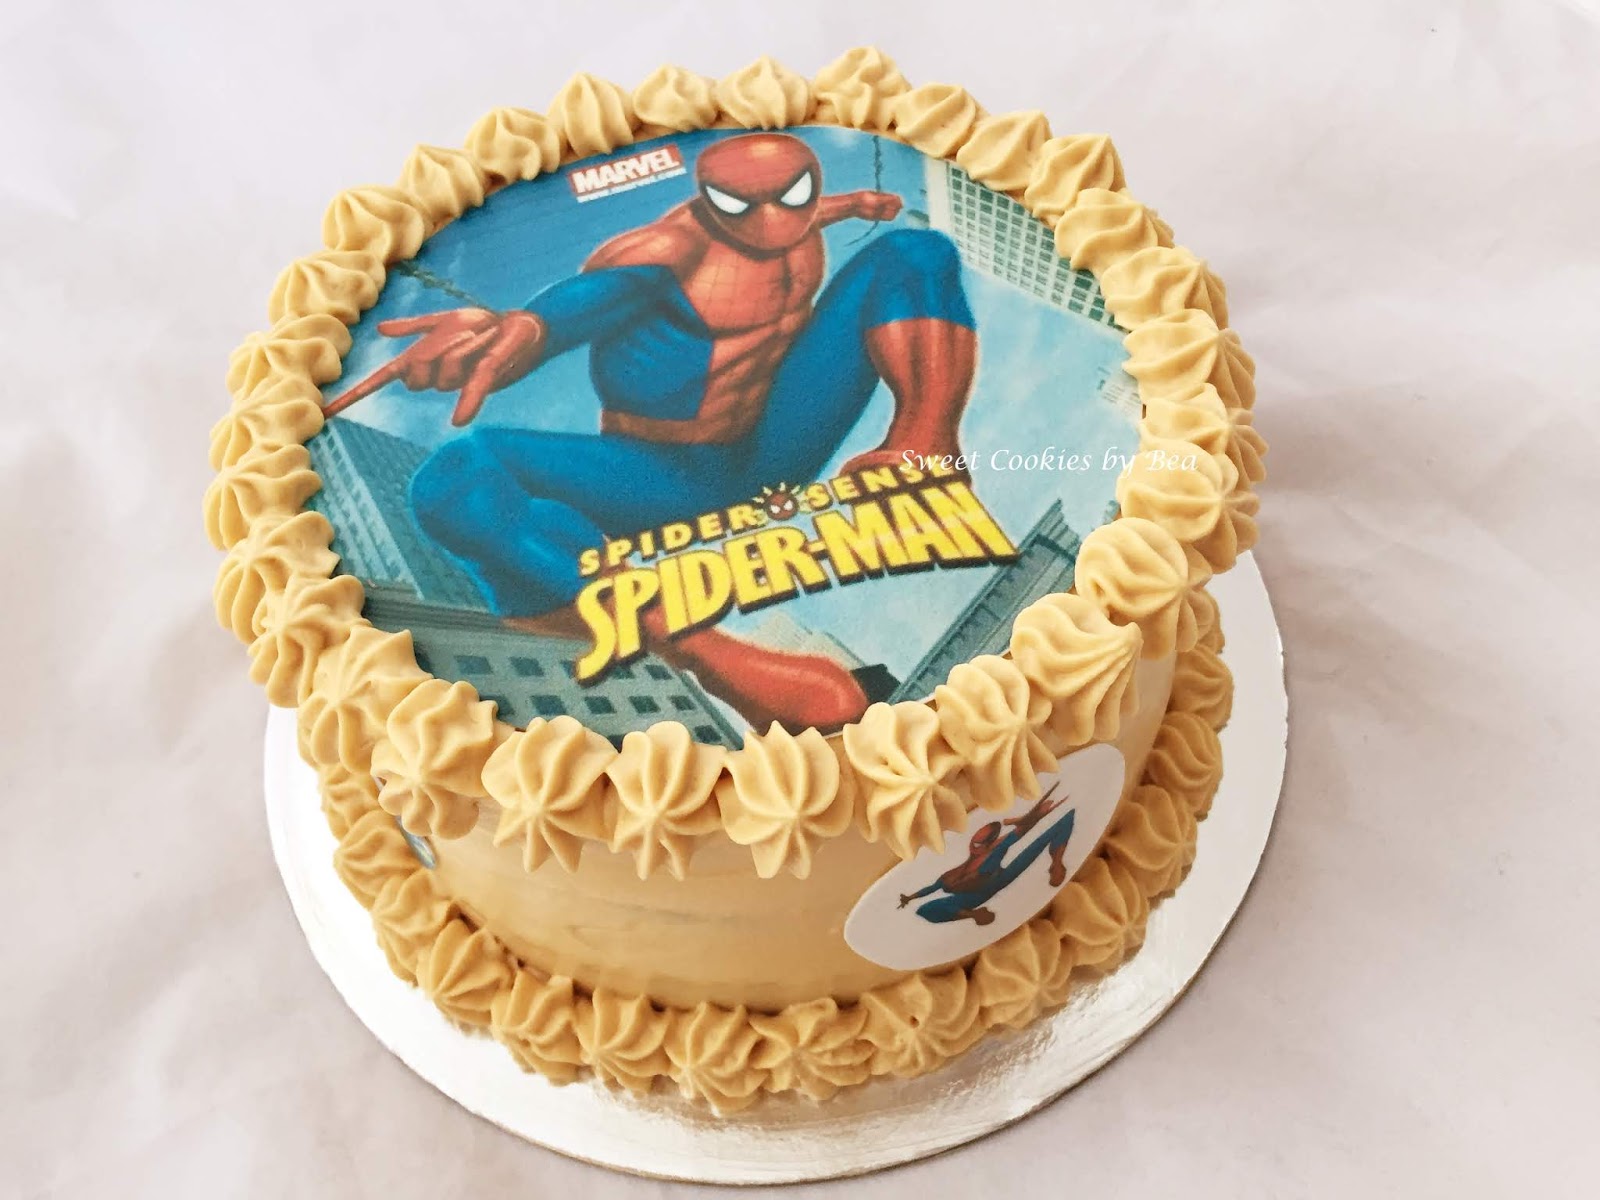 Decoración cumpleaños de niño de Spiderman. Sígueme para más decoracio